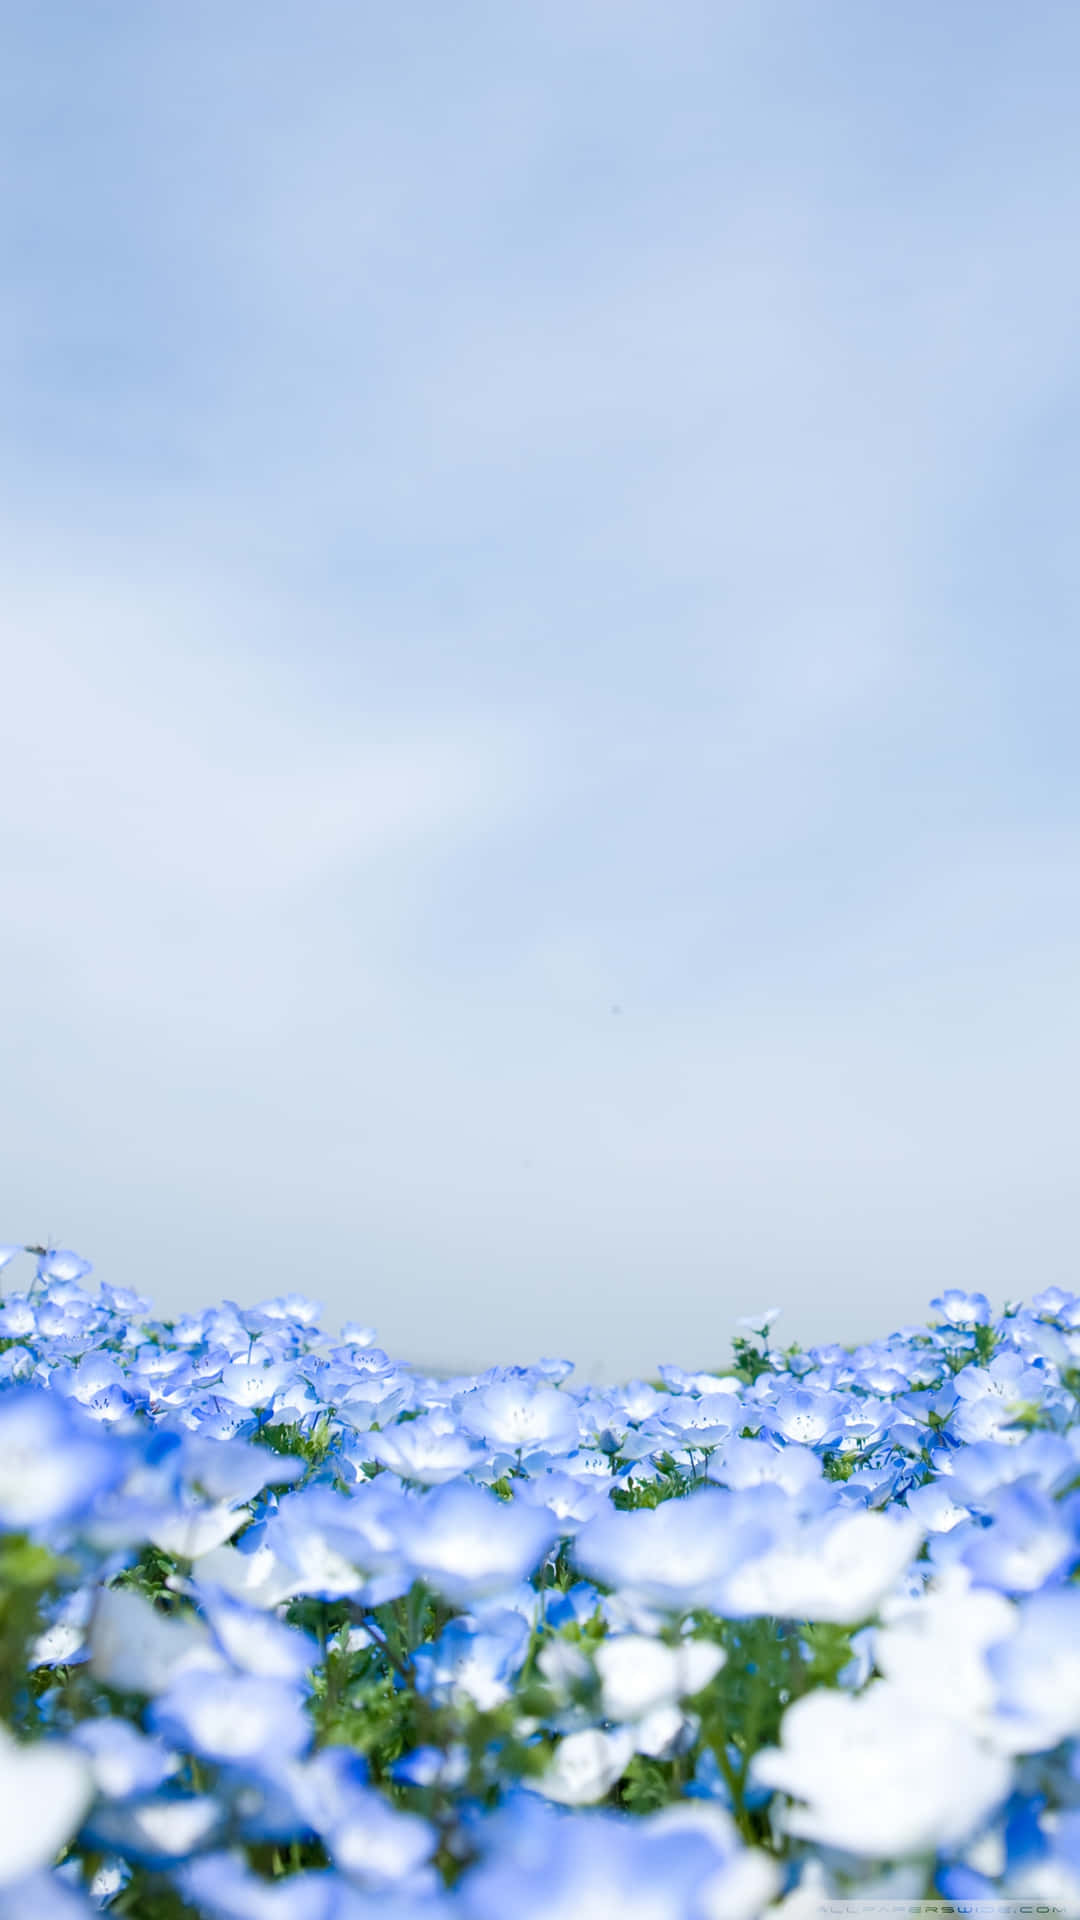 Omgiv dig selv i skønhed med vores udvalg af blå blomster. Wallpaper